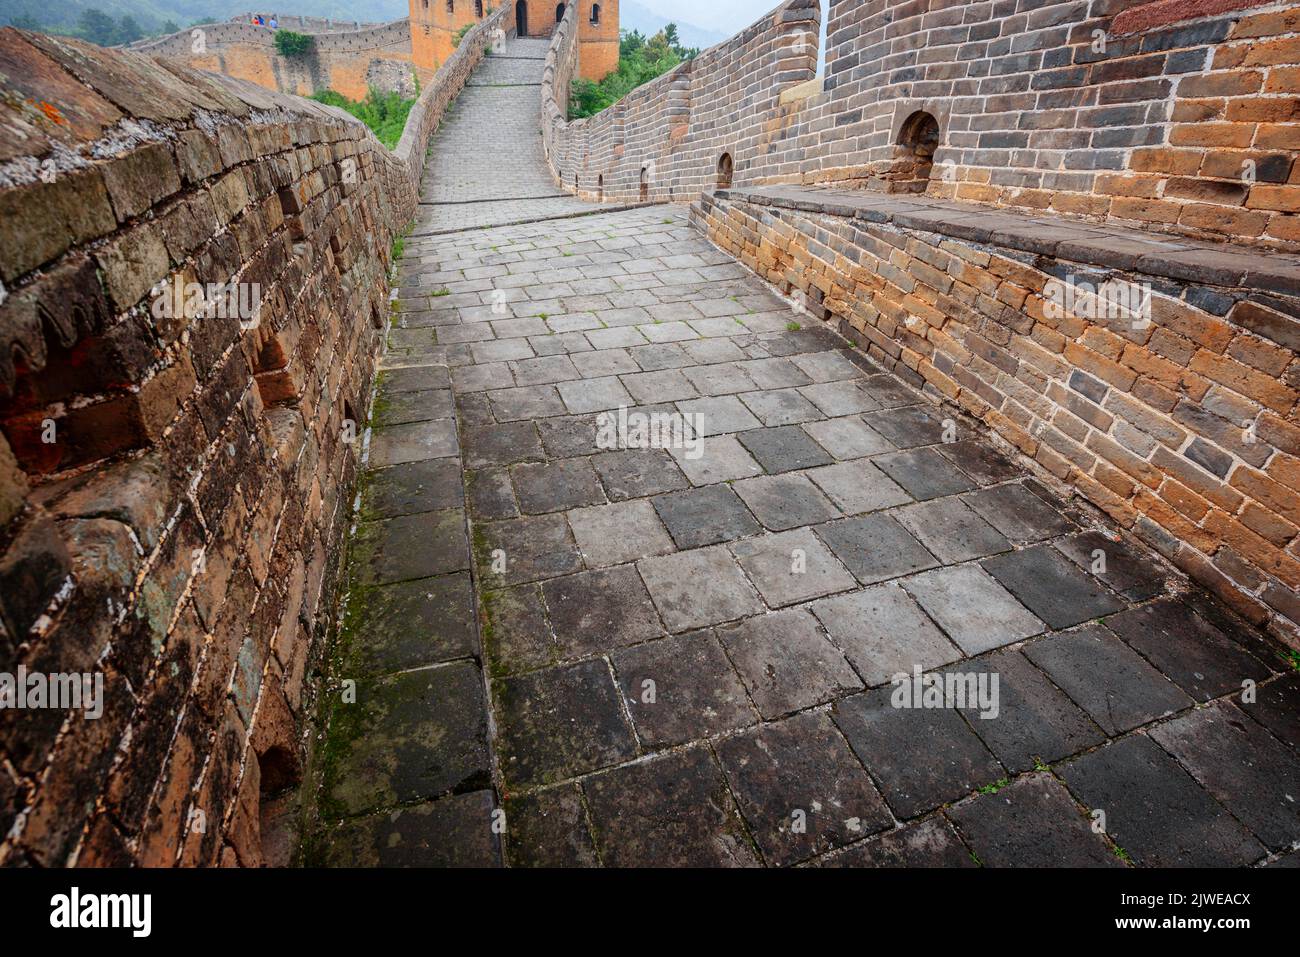 Grande Muraille de Chine, à la section de Jinshanling au crépuscule. Banque D'Images